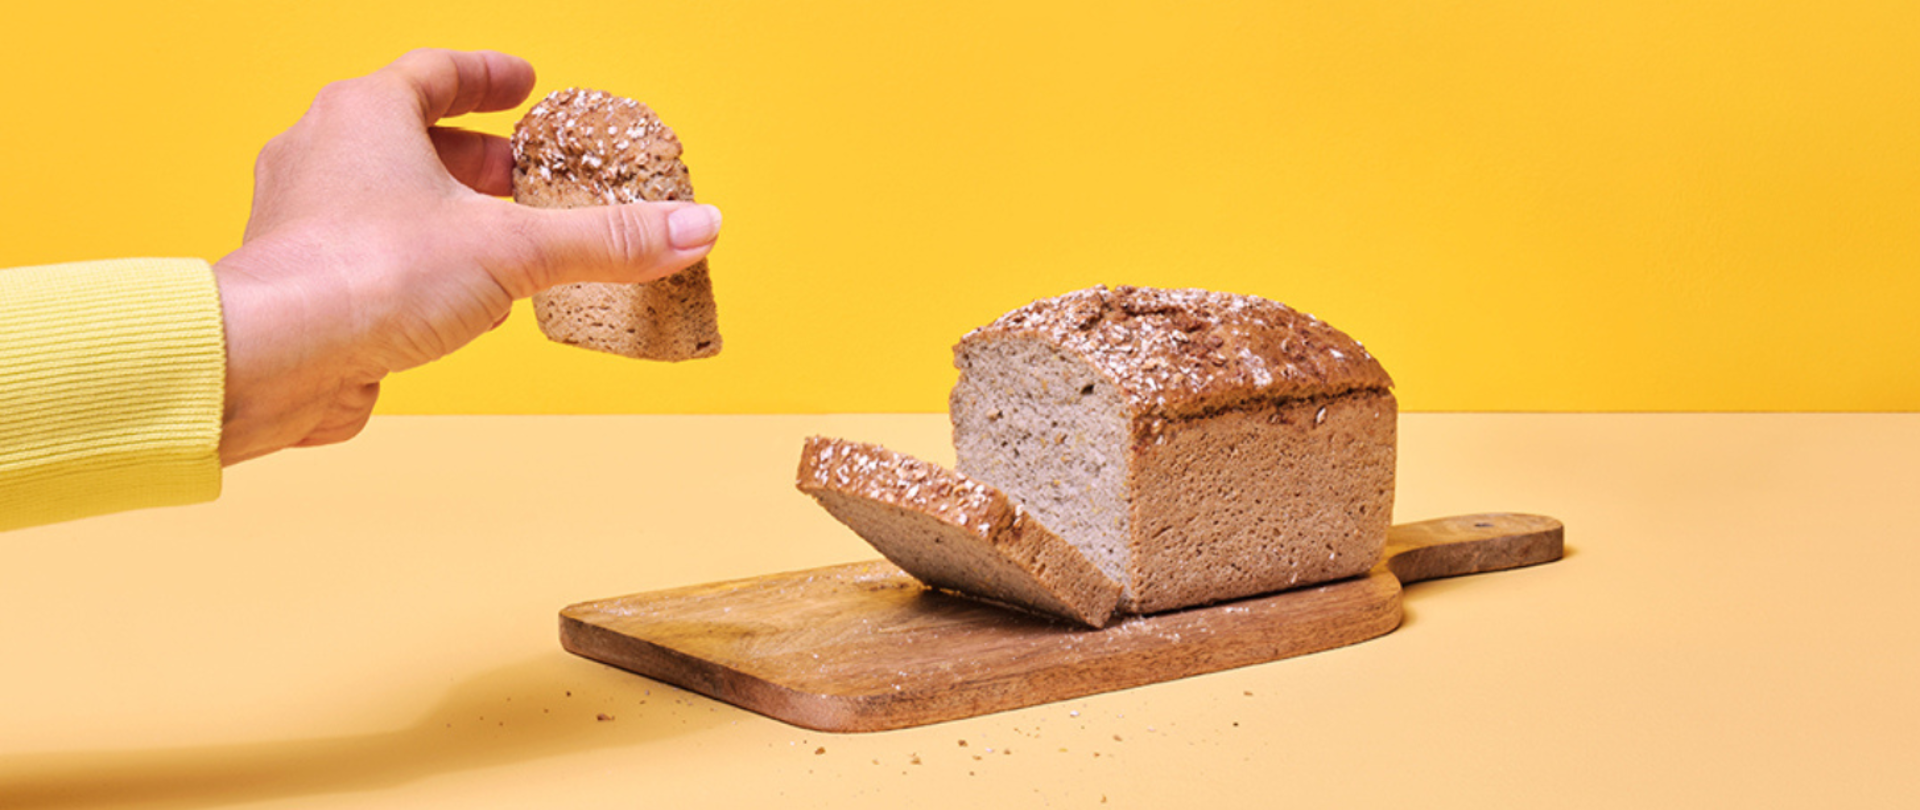 Na zdjęciu znajduje się bochenek chleba na desce do krojenia. Po lewej stronie widoczna jest dłoń, w której znajduje się kromka chleba. Tło jest żółte.